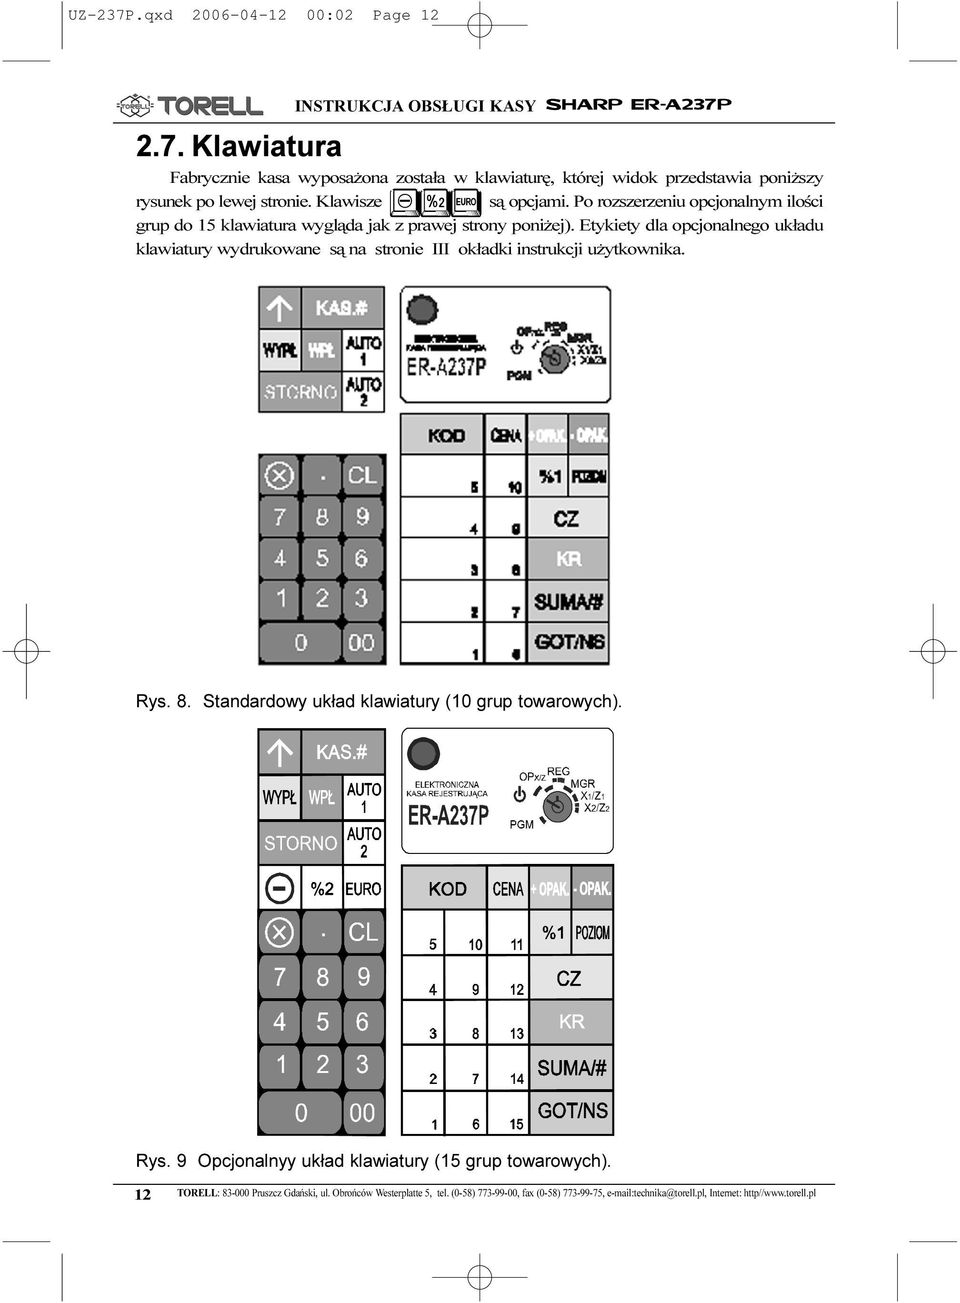 Etykiety dla opcjonalnego uk³adu klawiatury wydrukowane s¹ na stronie III ok³adki instrukcji u ytkownika. Rys. 8. Standardowy uk³ad klawiatury (0 grup towarowych). Rys. 9 Opcjonalnyy uk³ad klawiatury (5 grup towarowych).